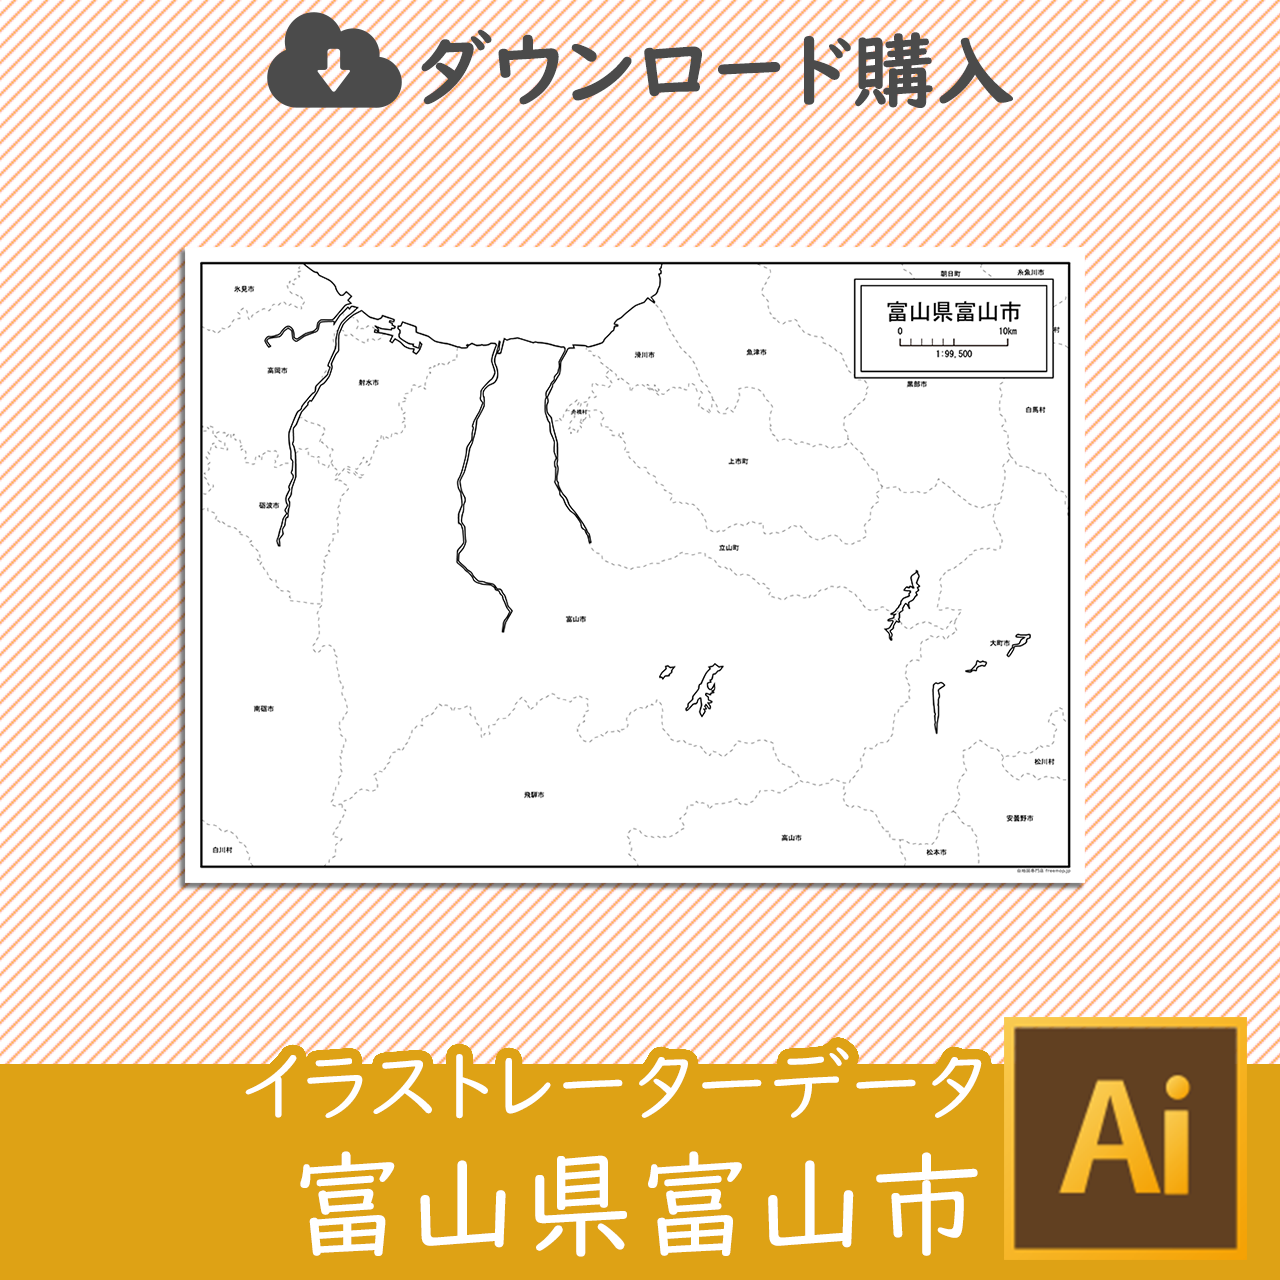 富山市のaiデータのサムネイル画像